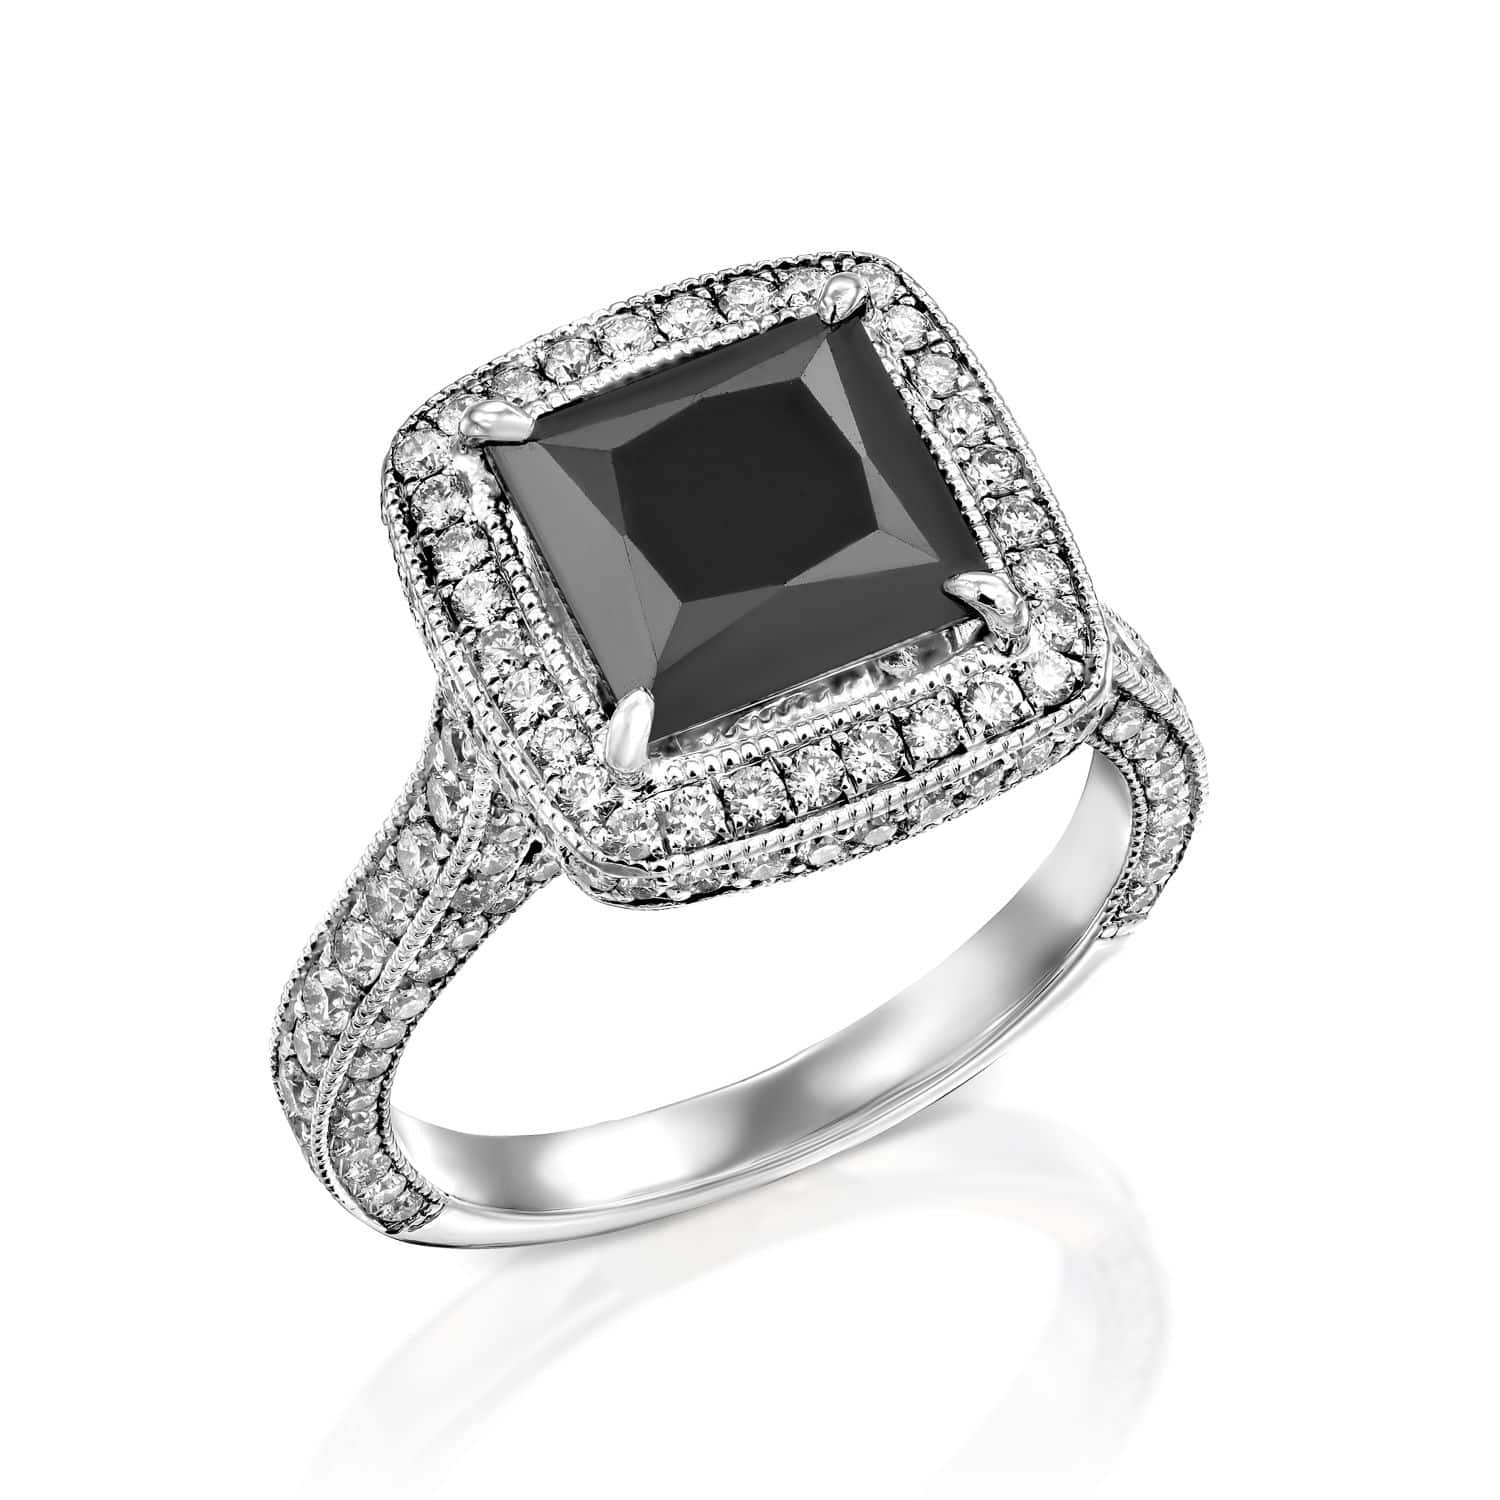 טבעת יהלומים אלגנטית דגם Pauline ב-30% הנחה הכוללת אבן חן שחורה גדולה בחיתוך מרובע מוקפת הילה כפולה של יהלומים קטנים ונוצצים משובצים על רקע לבן.